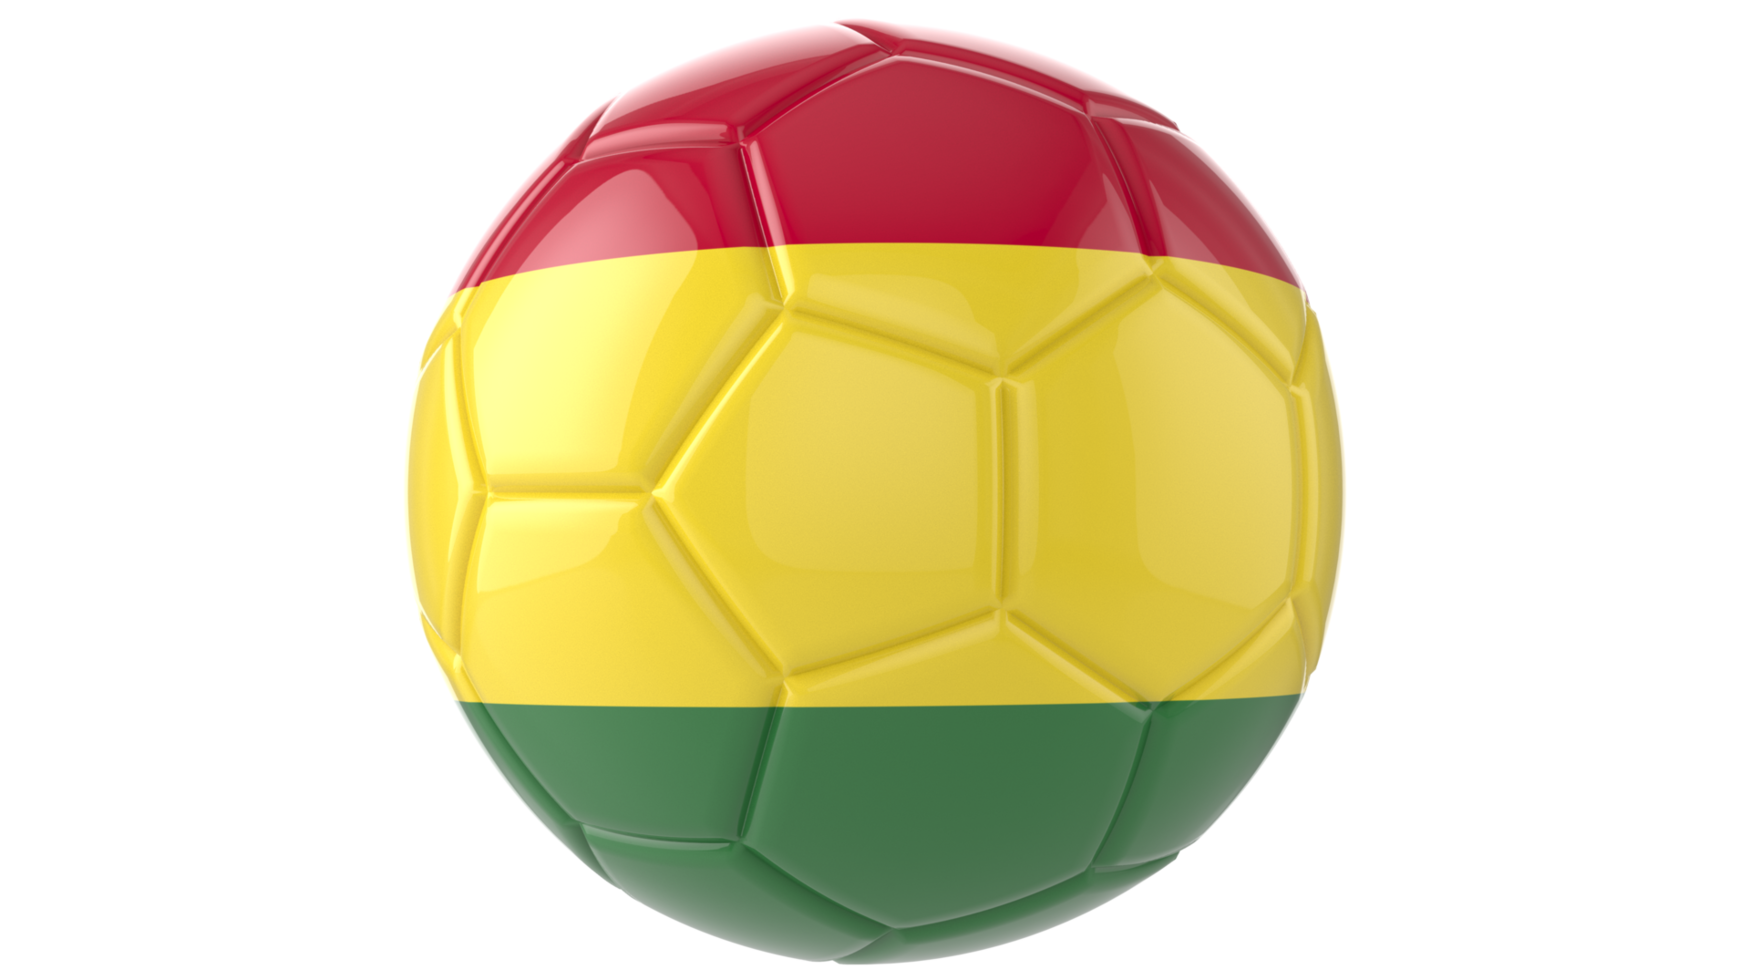 Balón de fútbol realista en 3d con la bandera de bolivia aislado en un fondo png transparente